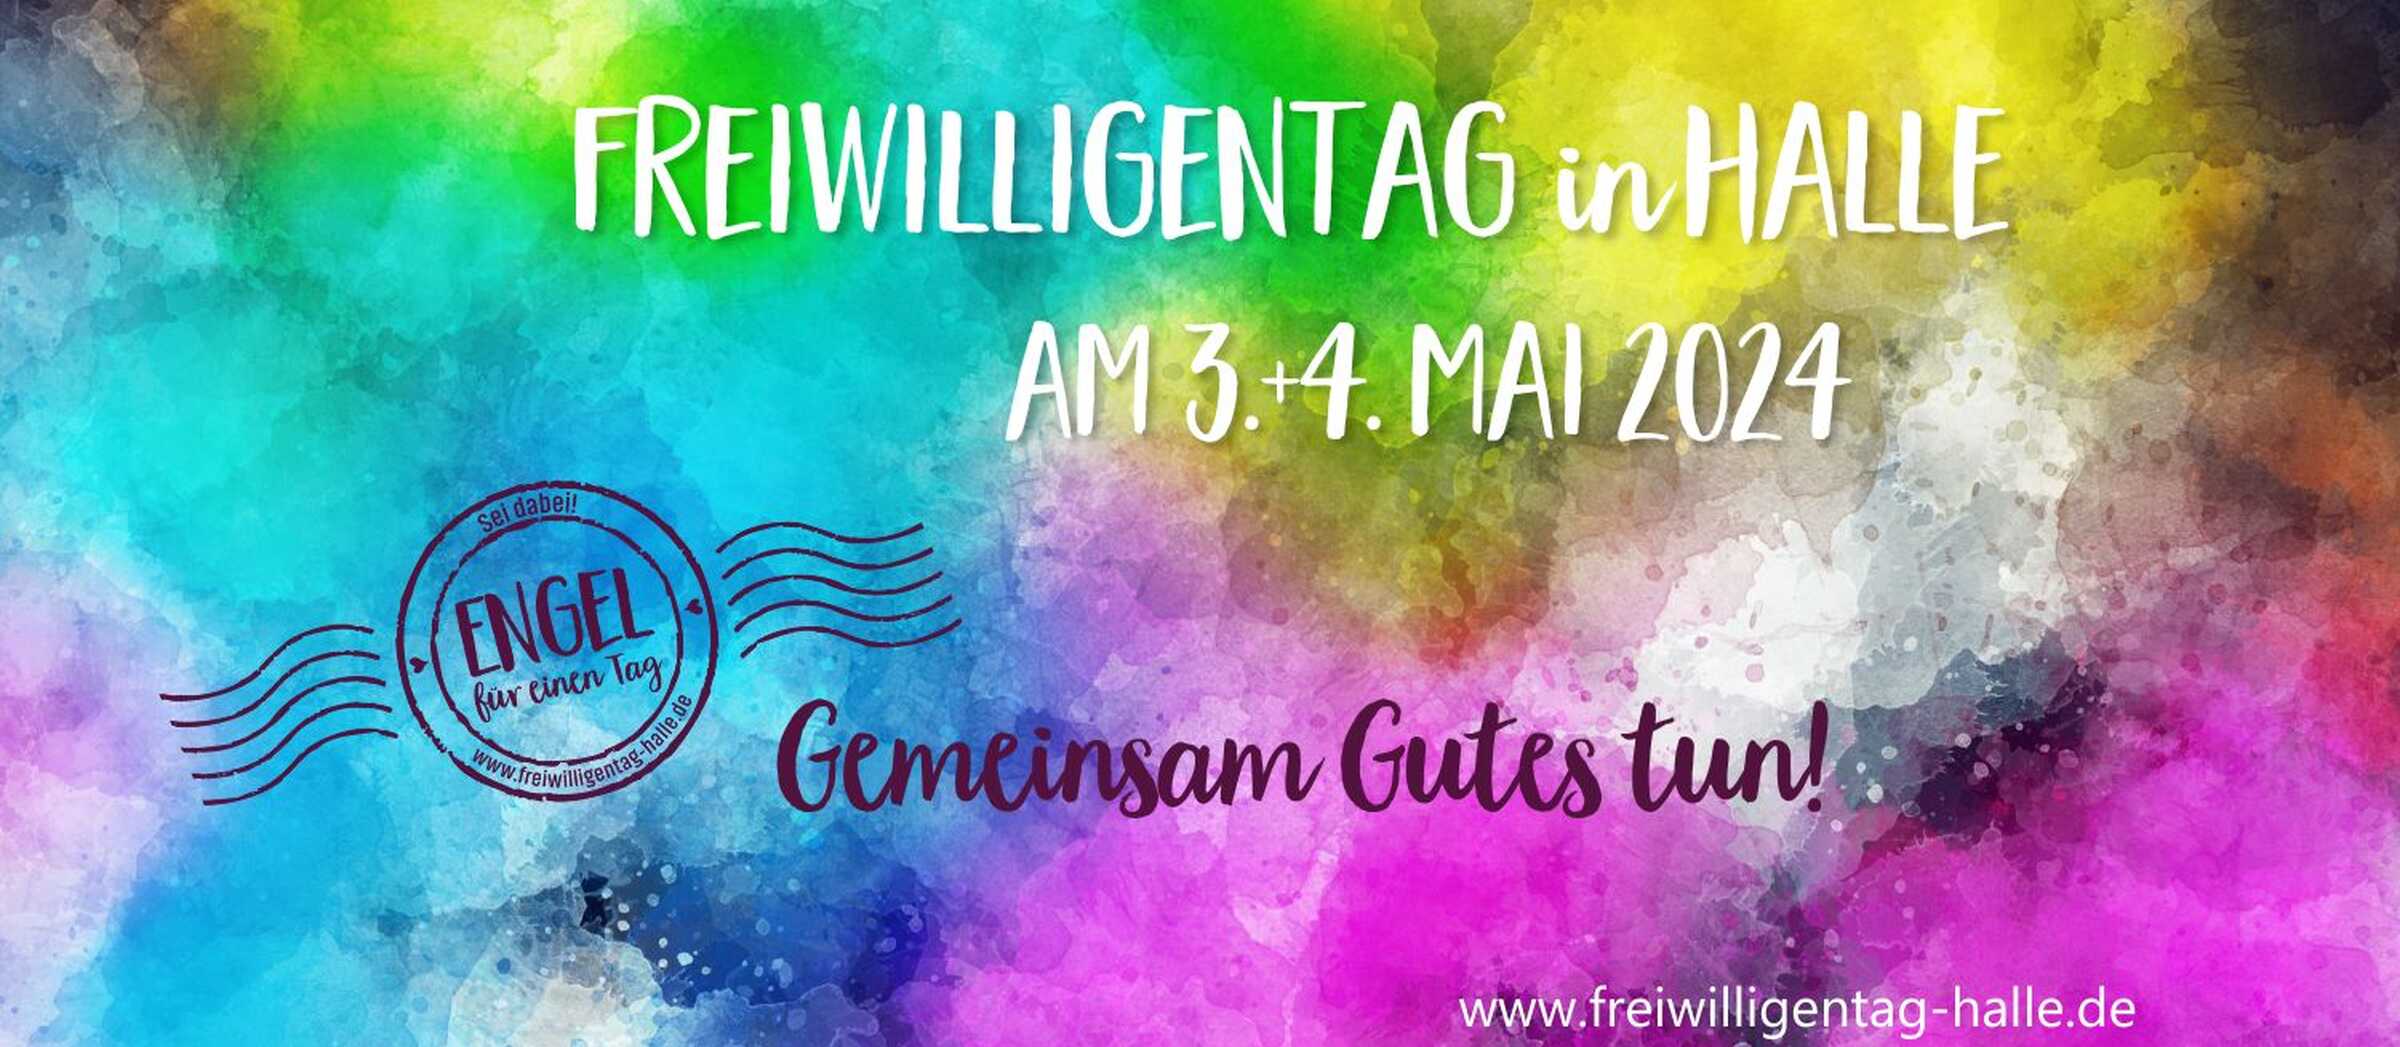 Banner mit Text: Freiwilligentag in Halle am 3. und 4. Mai 2024. Gemeinsam Gutes tun!